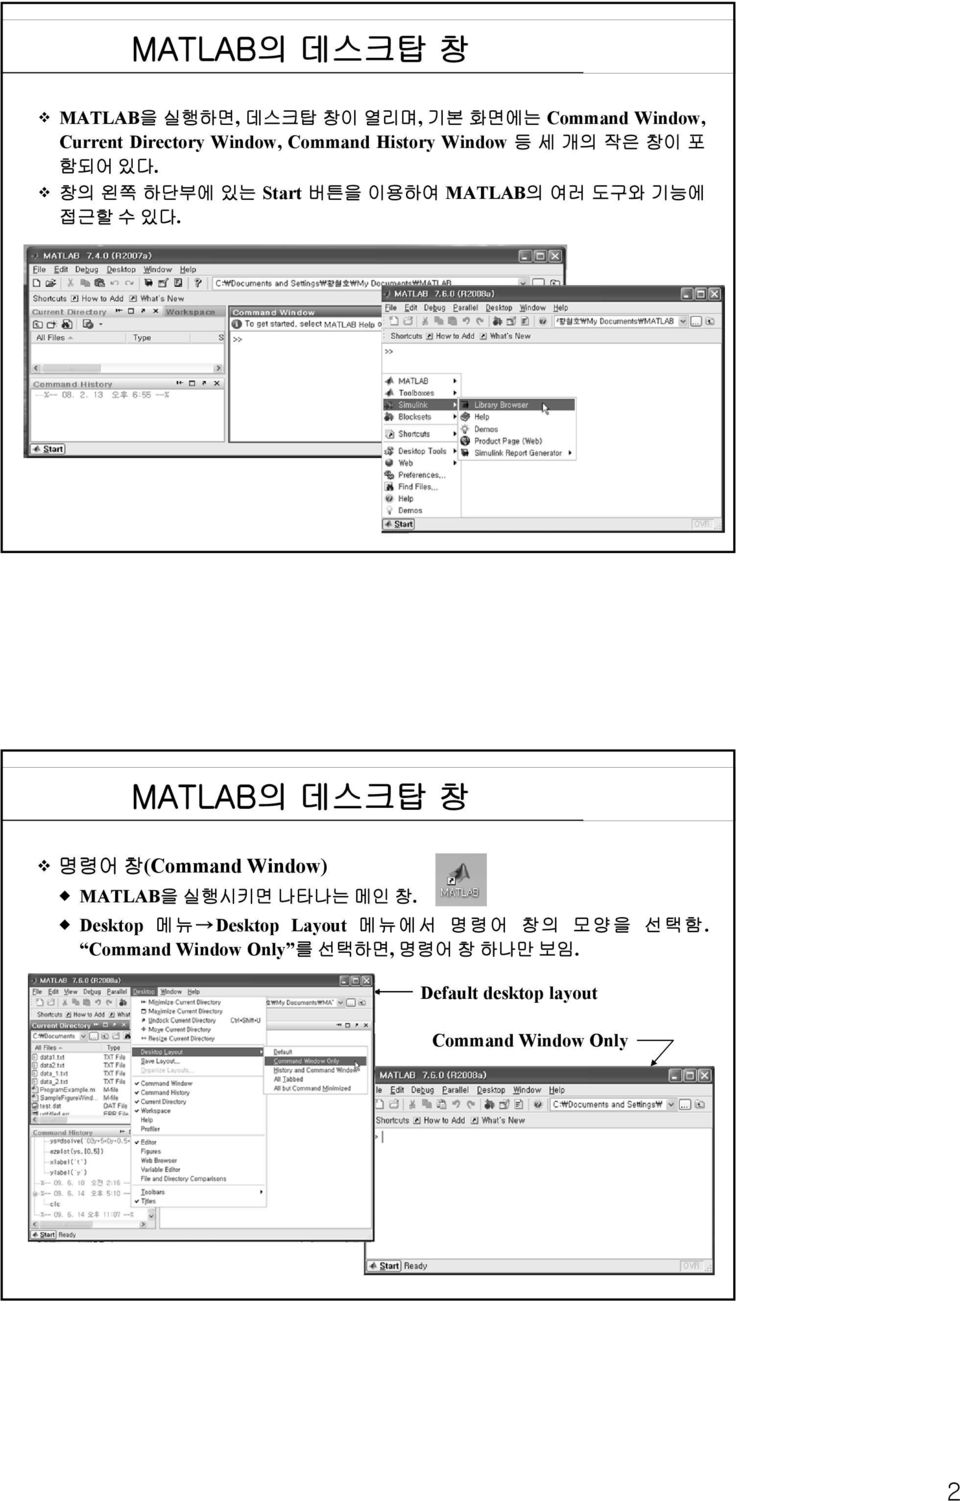 창의 왼쪽 하단부에 있는 Start 버튼을 이용하여 MATLAB의 여러 도구와 기능에 접근할 수 있다.